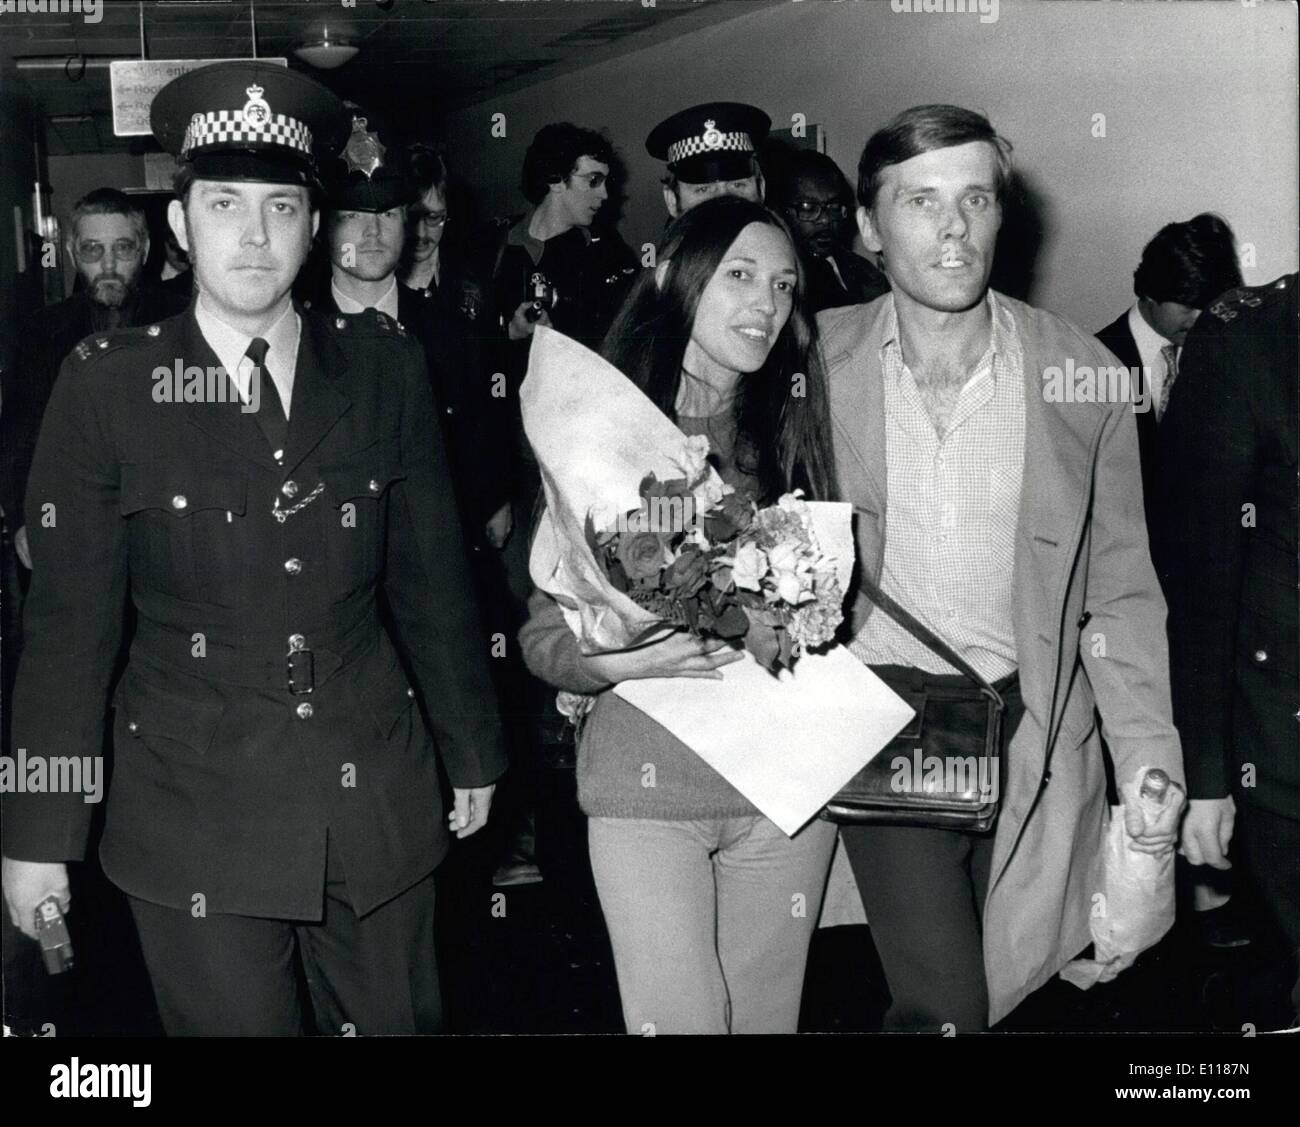 Apr. 04, 1976 - BRITIUH DUSINESSAAN AU, sua moglie argentina arrivare TORNA IN GRAN BRETAGNA dopo 4h-NONTHs IN CARCERE argentino, ''RICHARD WHITECROSS, l'imprenditore britannico detenuto per 4A mesi in un Ar,entine jell, arrivee back Ct Heathrow Airnort ultimo potrebbe nod ha raccontato di essere arrestati a gunpoint ed essendo threntened con drath da gunrds che egli snidtortured la maggior parte dei prigionieri. Holiday Inn Express argentino-nato moglie, detenuto nel carcere di EAME, ha detto di aver wns costretto a guardare ne uno dei loro amici con n il cofano sopra il suo capo ',è bonten fino ny quattro uomini. Signor Whitecro Foto Stock